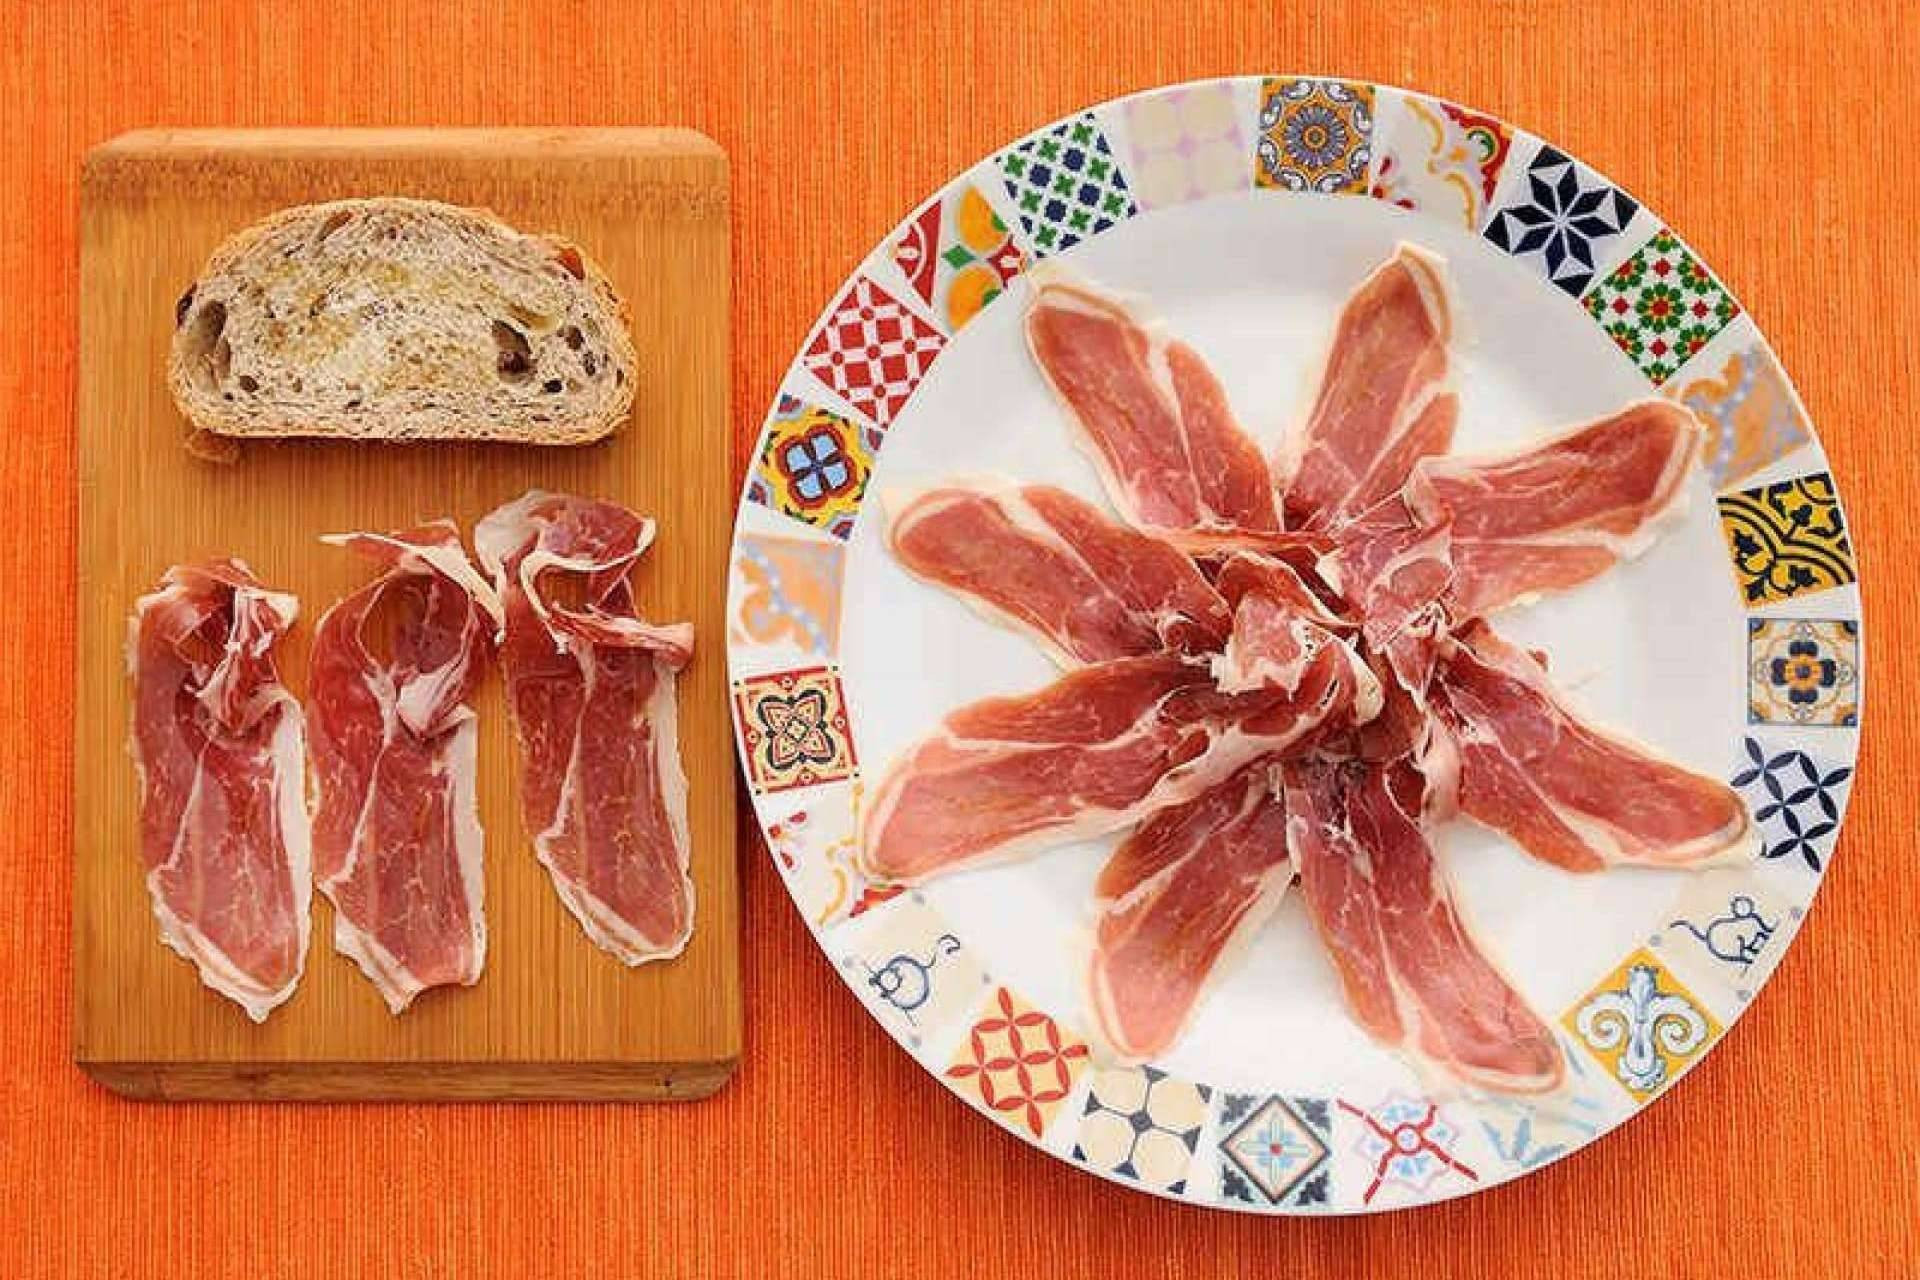  Jamón de Trevélez y jamón de la Alpujarra son dos productos únicos que se pueden adquirir en Gastronomic Spain 